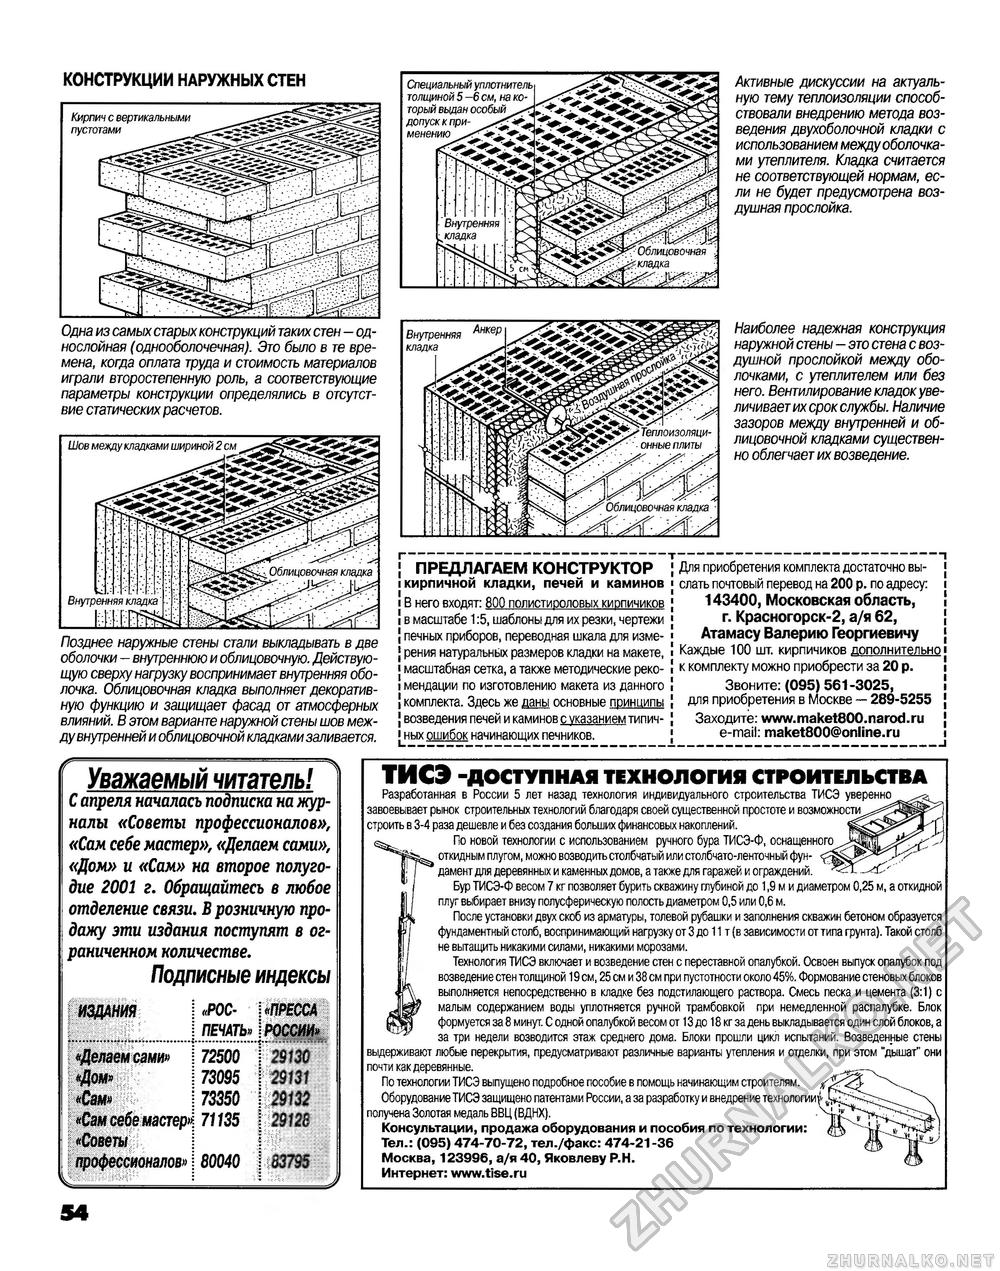 Советы профессионалов 2001-03, страница 54